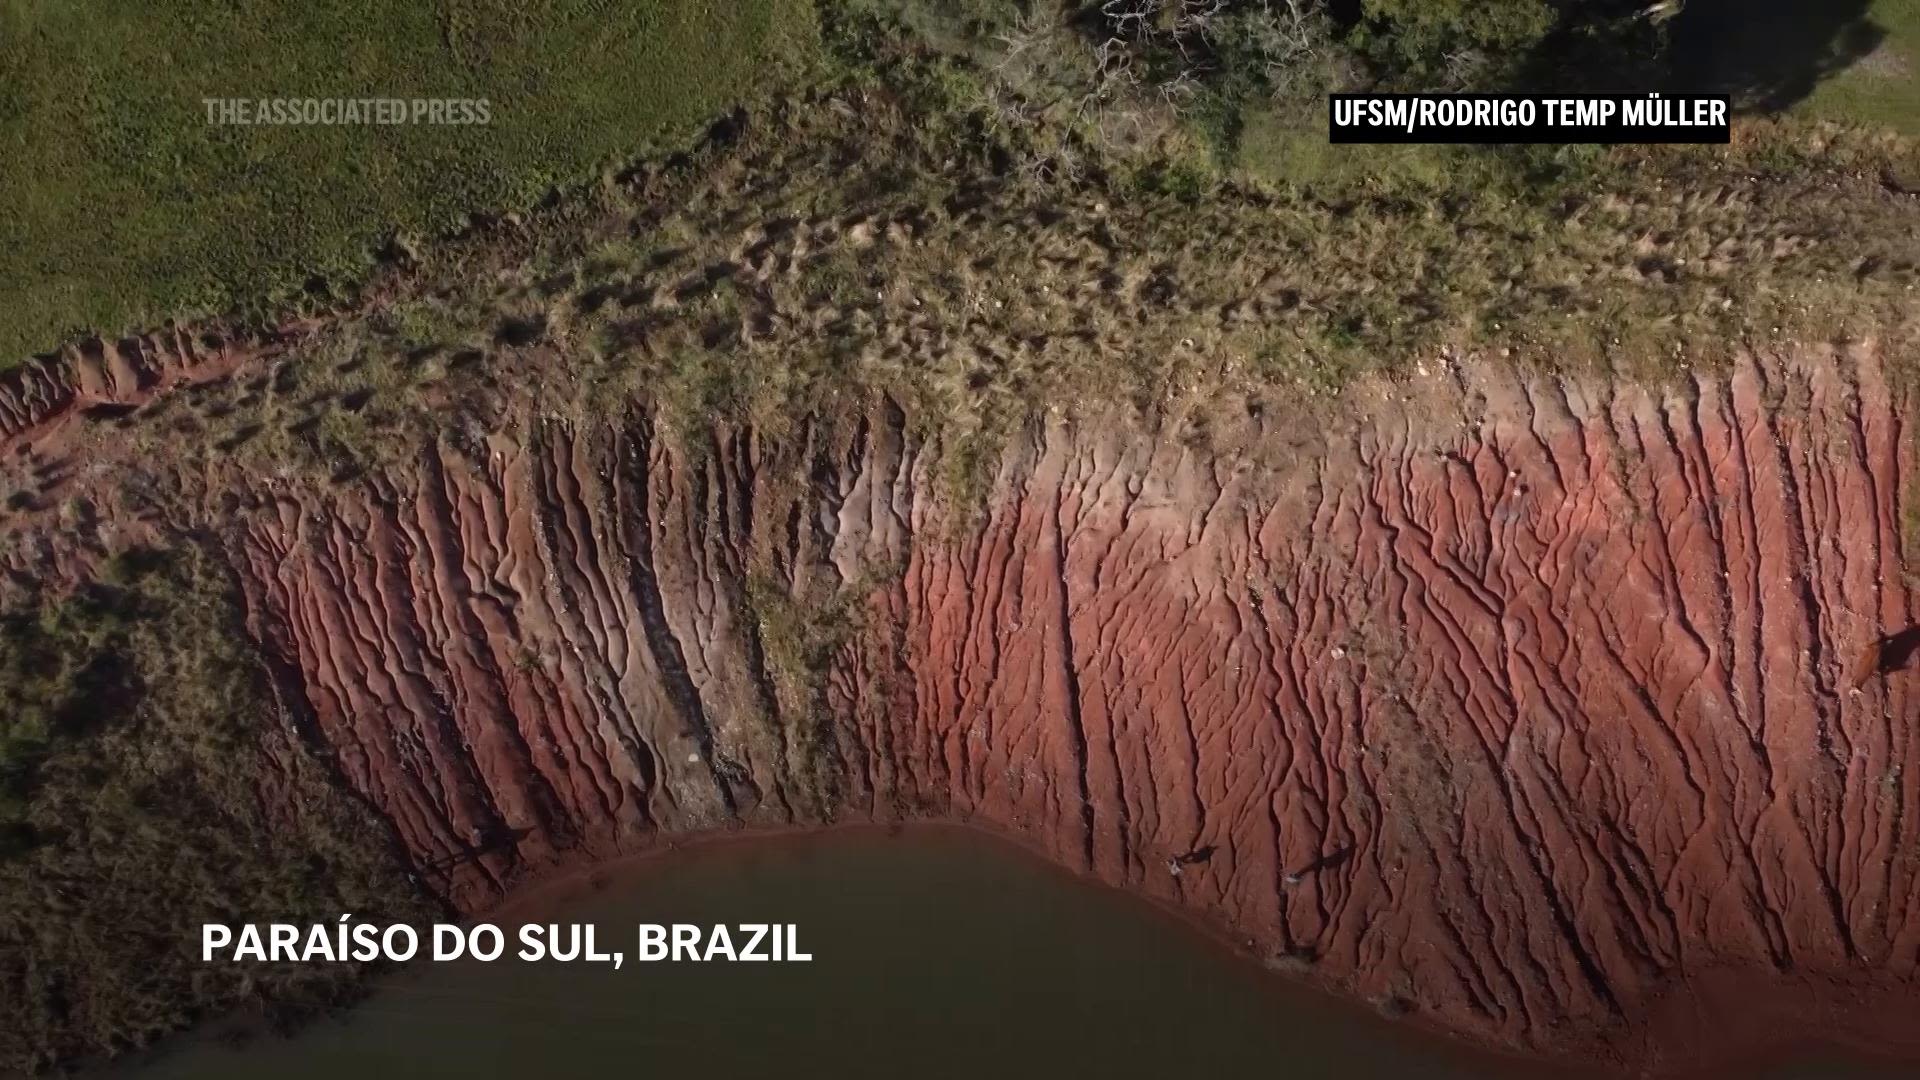 Brazilian researchers discover dinosaur fossil after heavy rains in Rio Grande do Sul